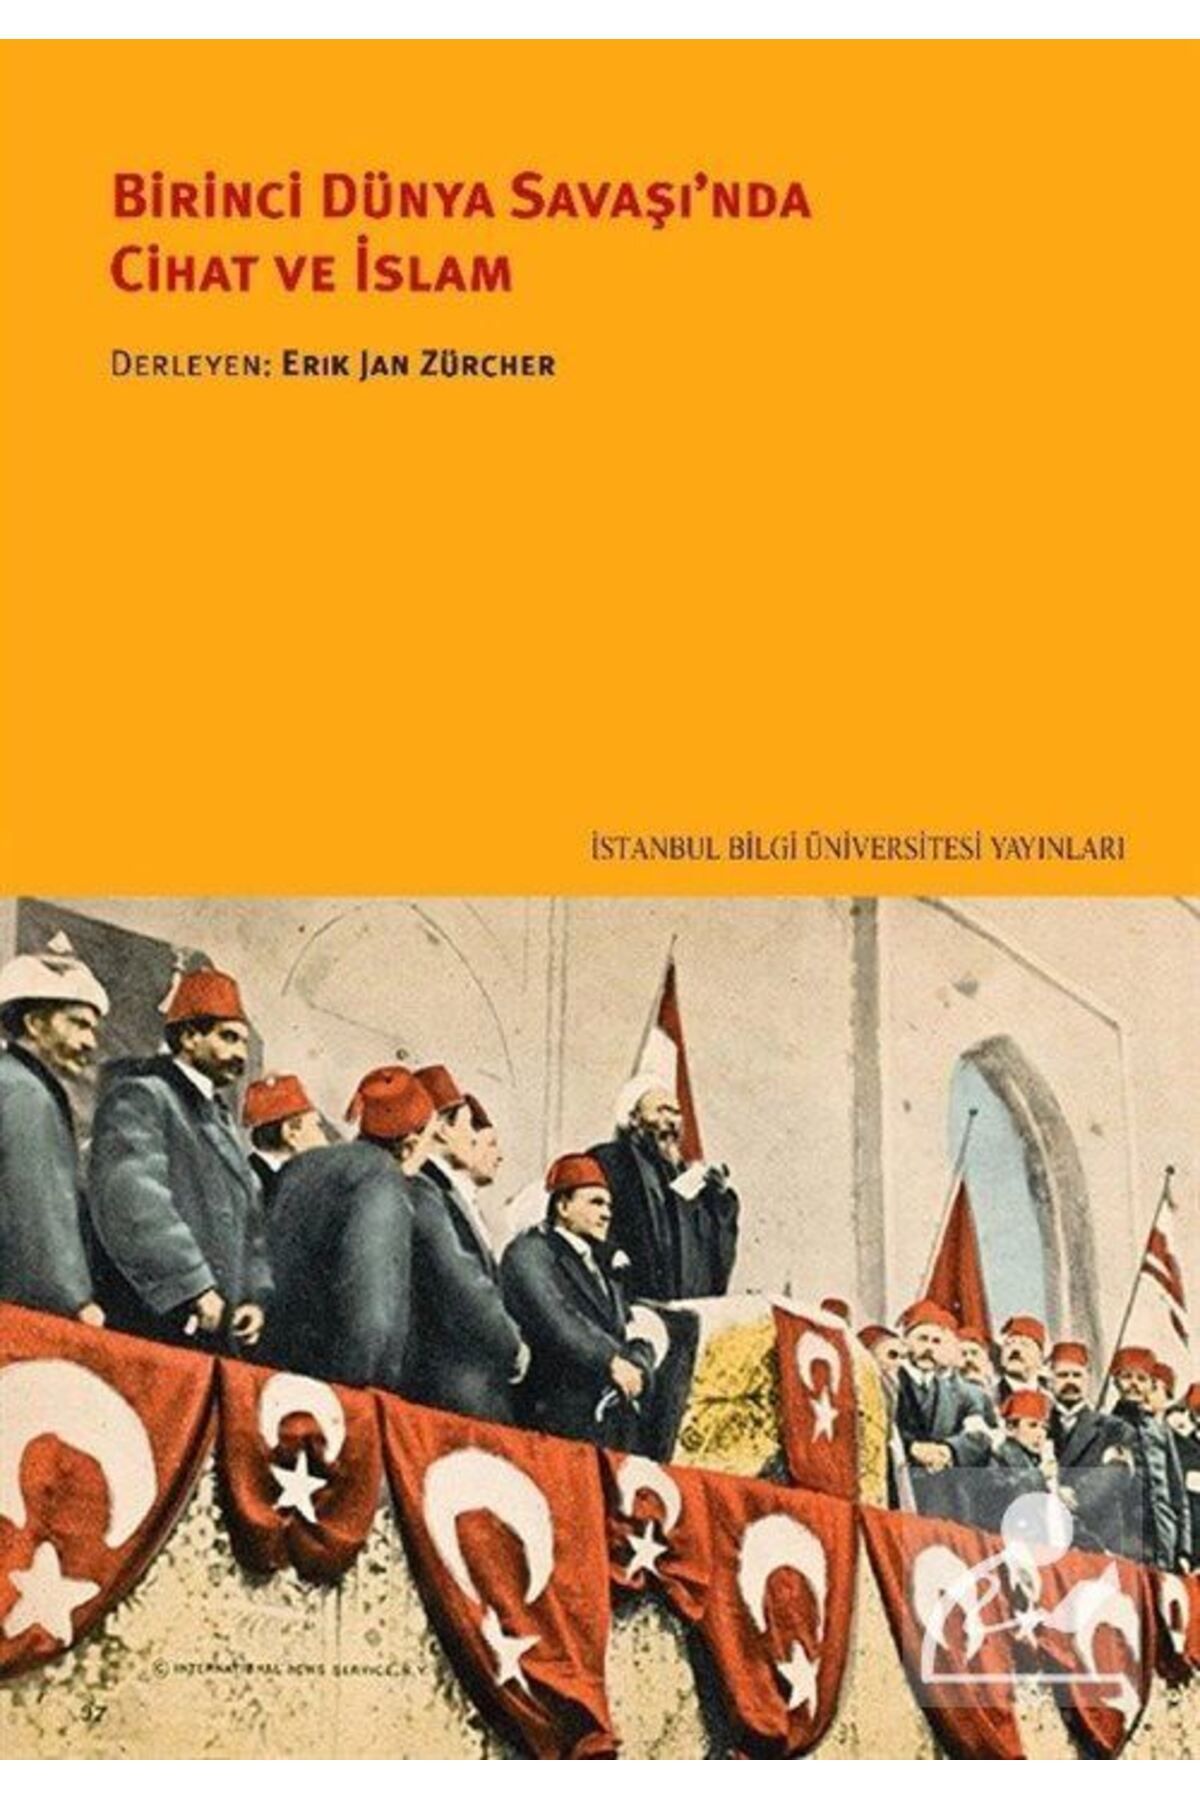 İstanbul Bilgi Üniversitesi Yayınları Birinci Dünya Savaşı'nda Cihat Ve Islam